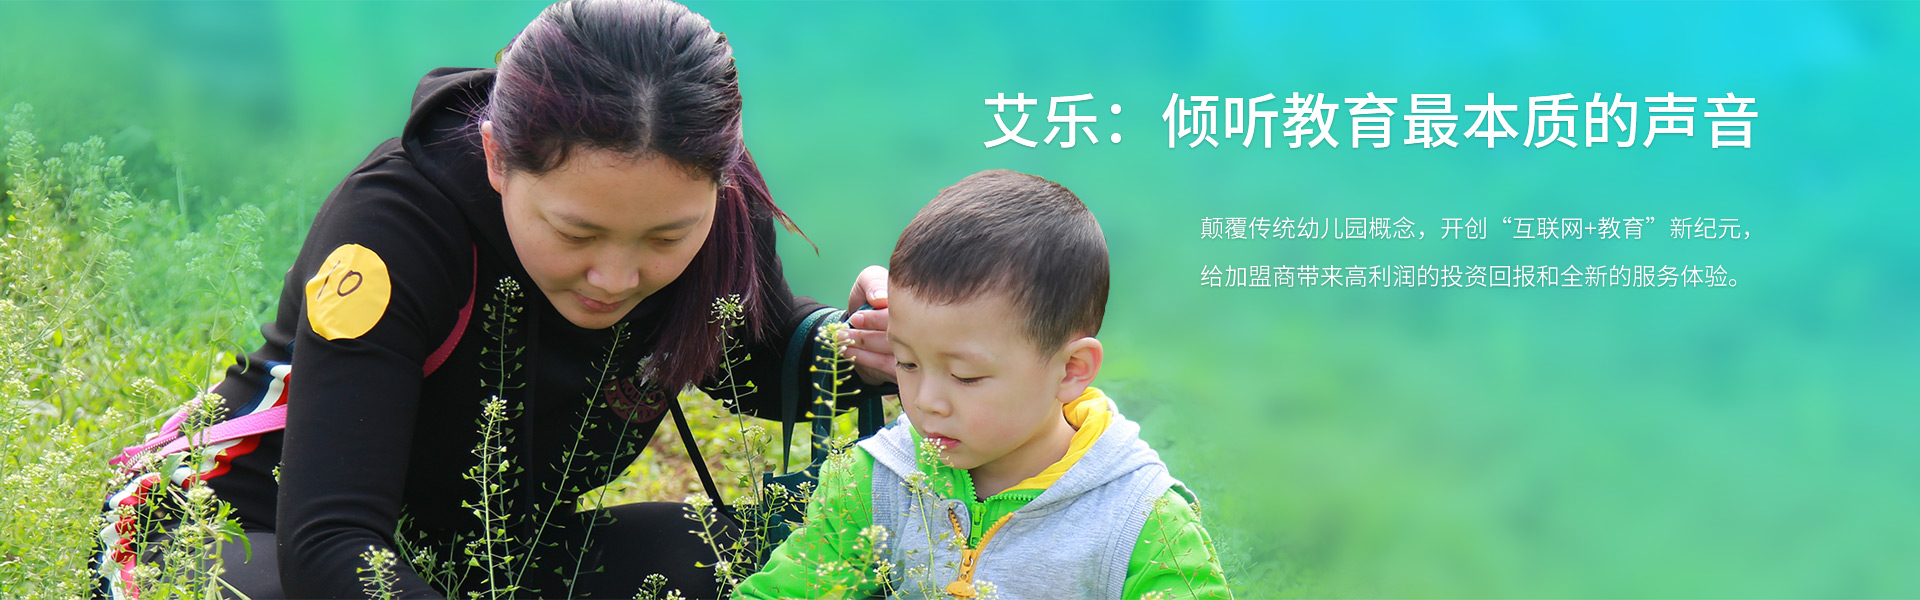 香港艾乐国际幼儿园加盟优势